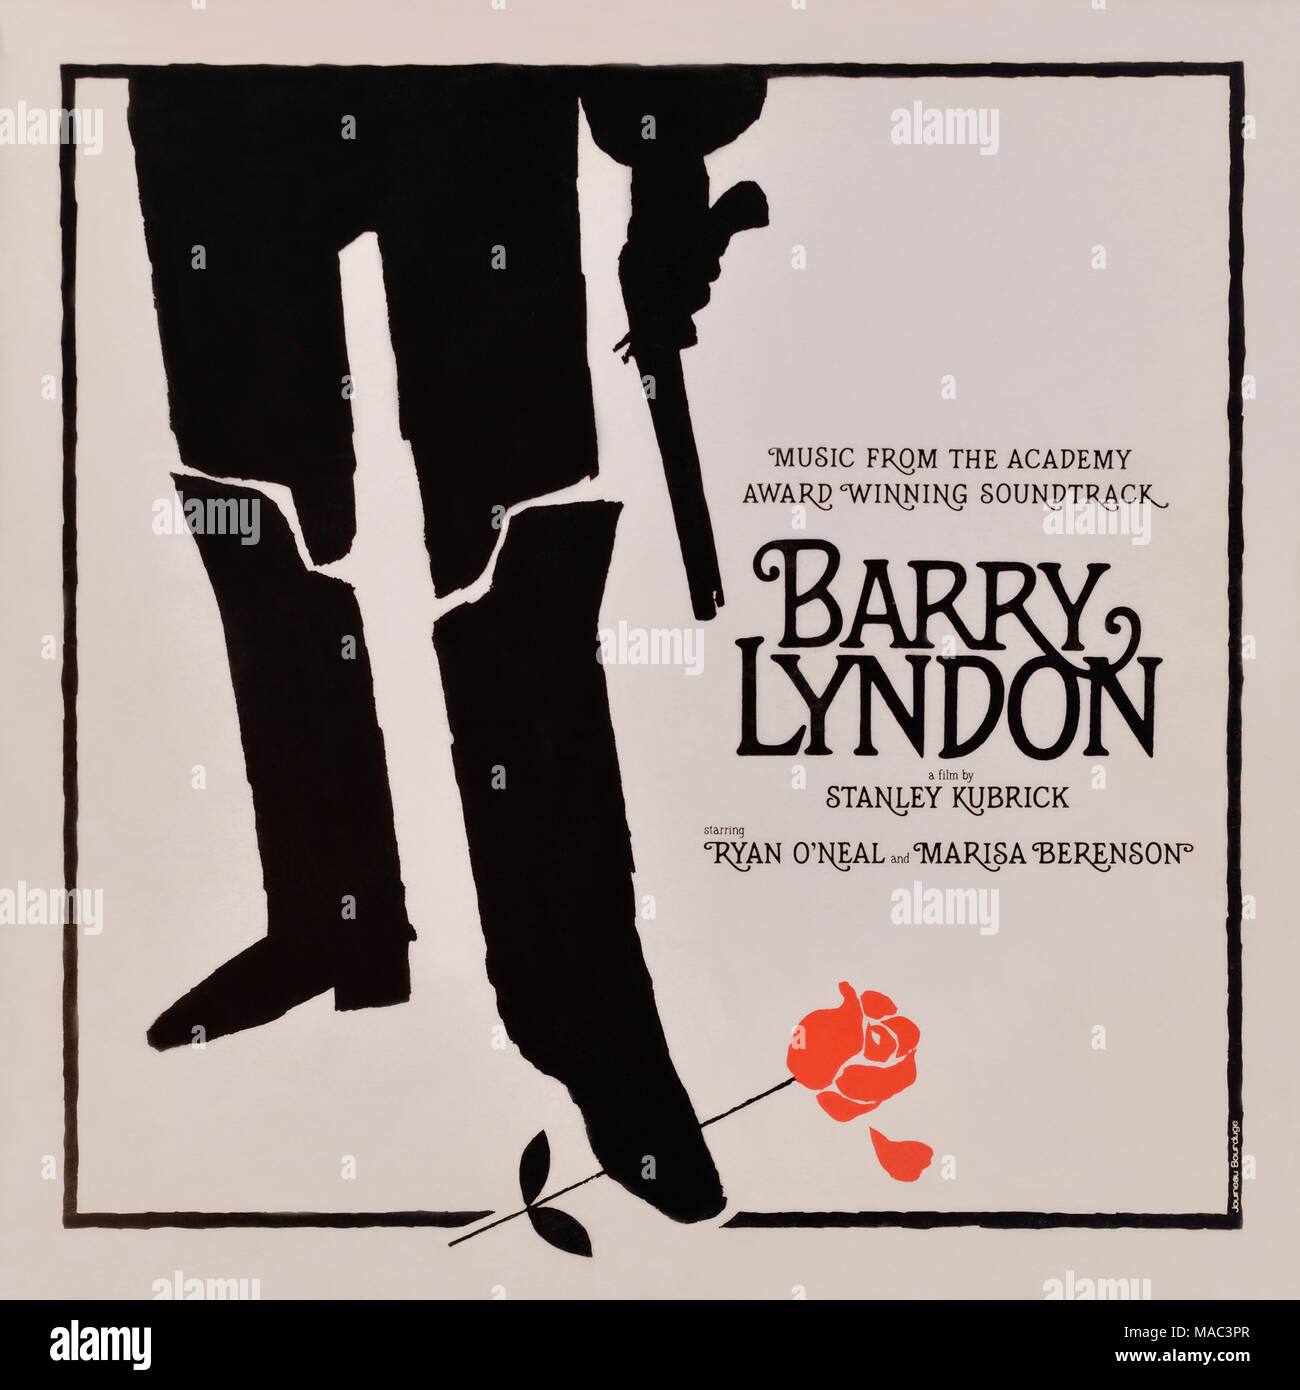 Barry Lyndon (musique du Soundtrack) - couverture originale de l'album en vinyle - 1976 Banque D'Images